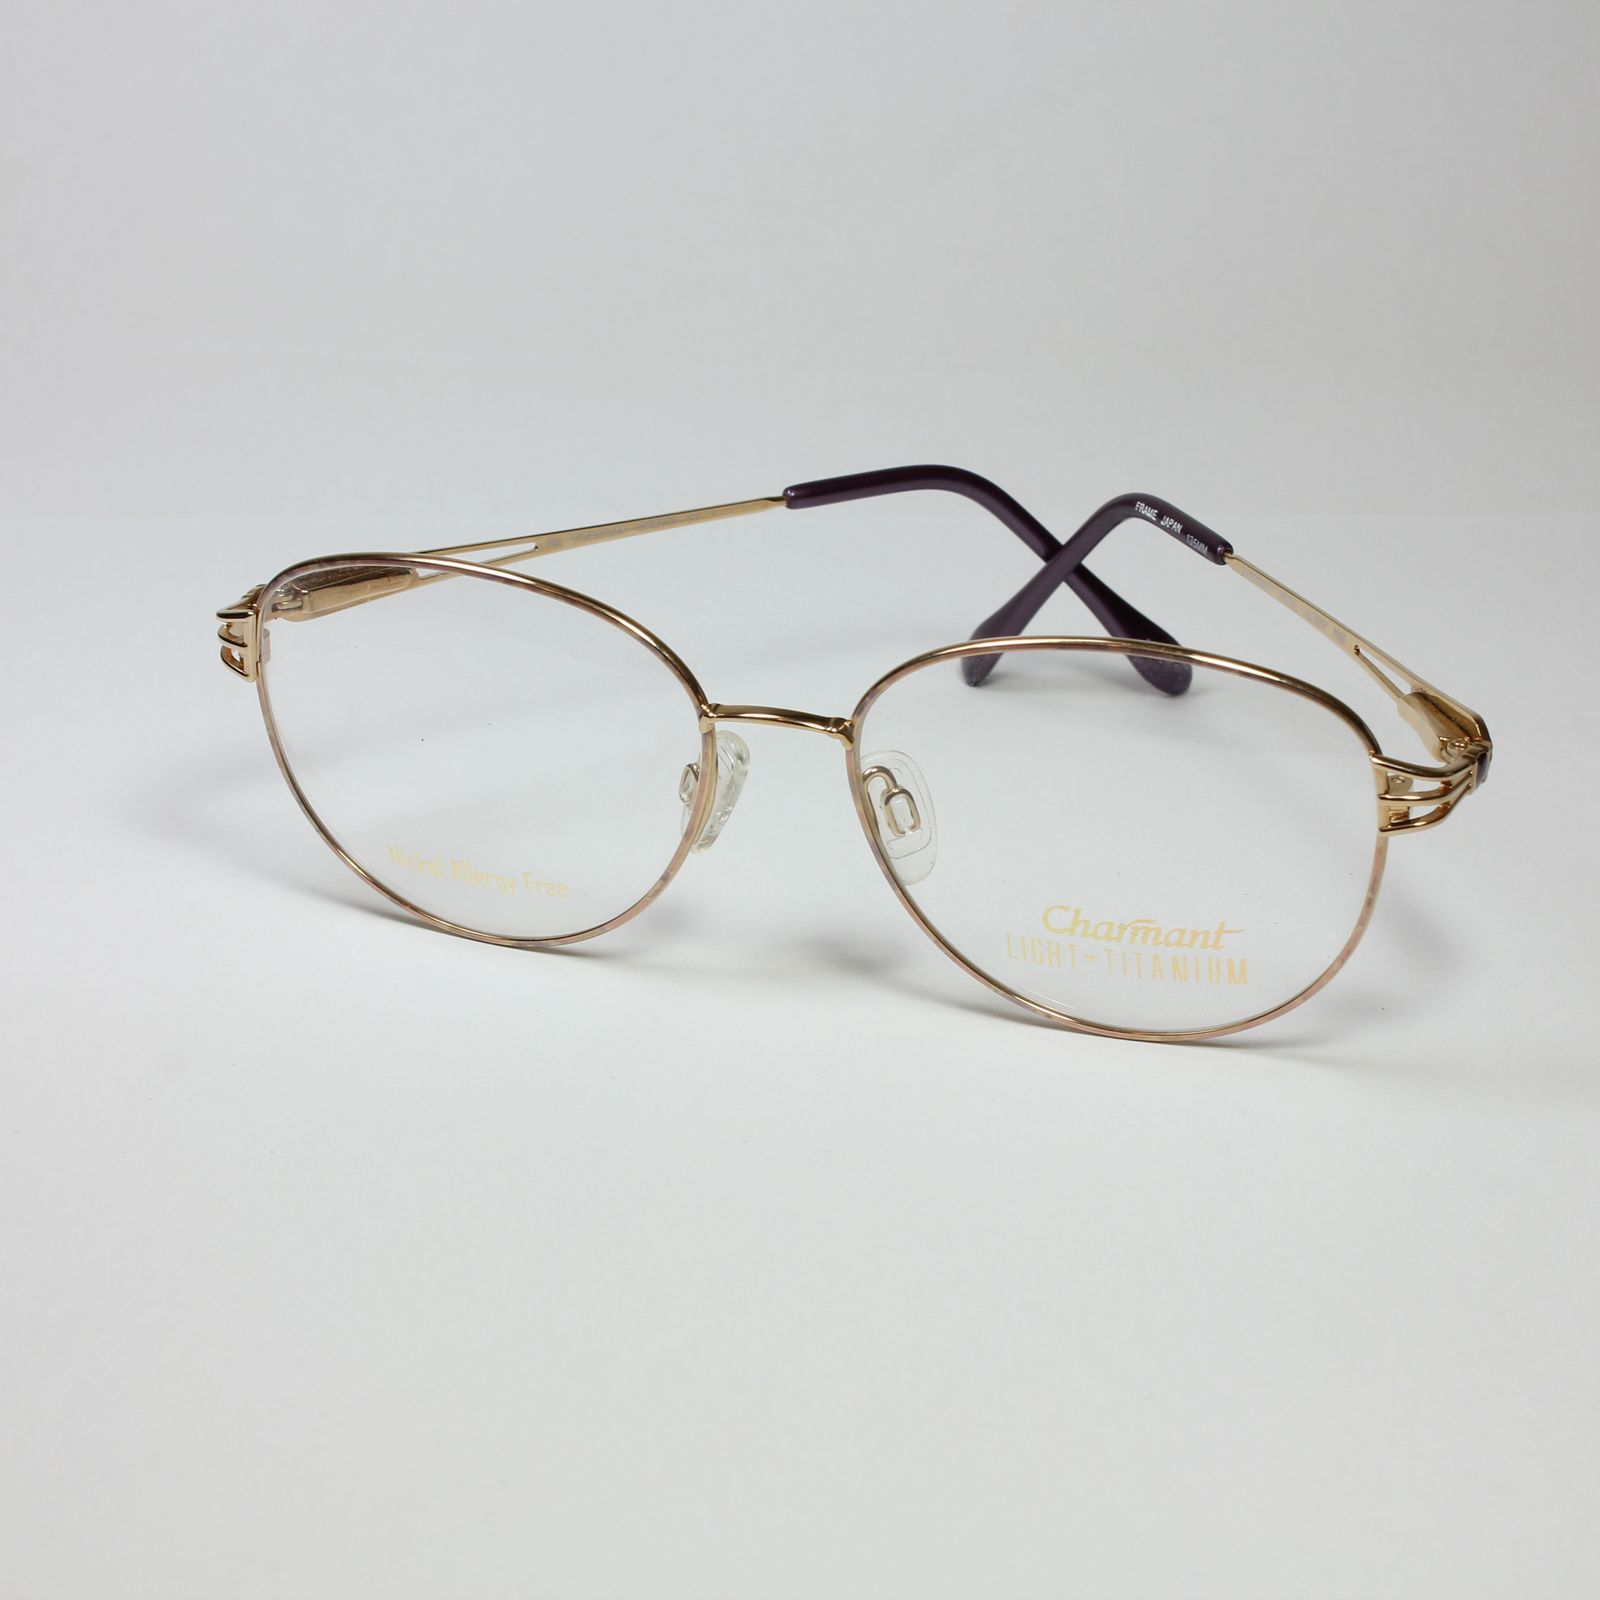 فریم عینک طبی چارمنت مدل 8210 -  - 2